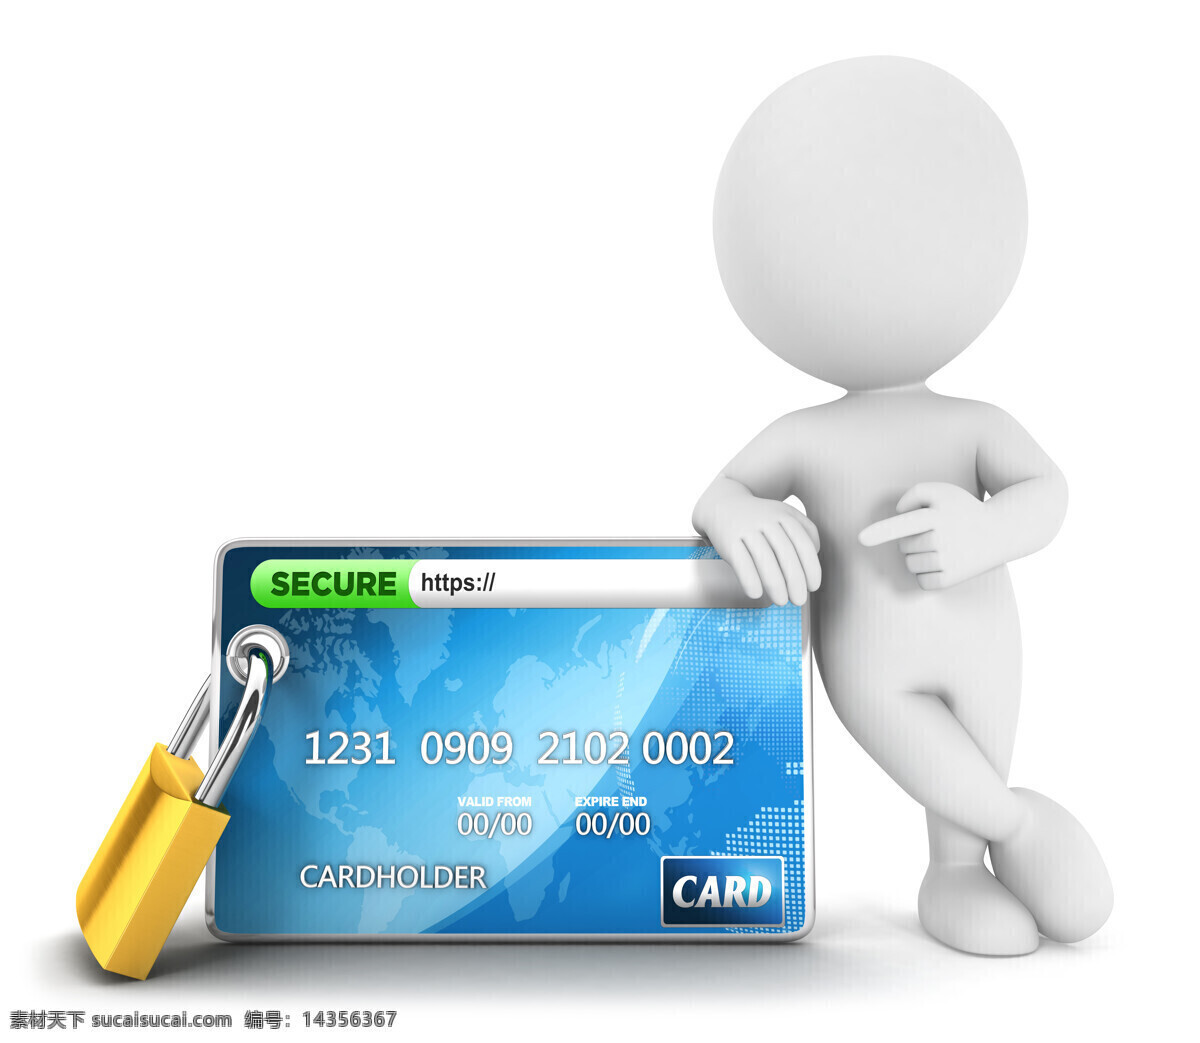 金融 3d 小人 银行卡 3d小人物 锁 网络 卡片 现代商务 商务图片 金融货币 商务金融